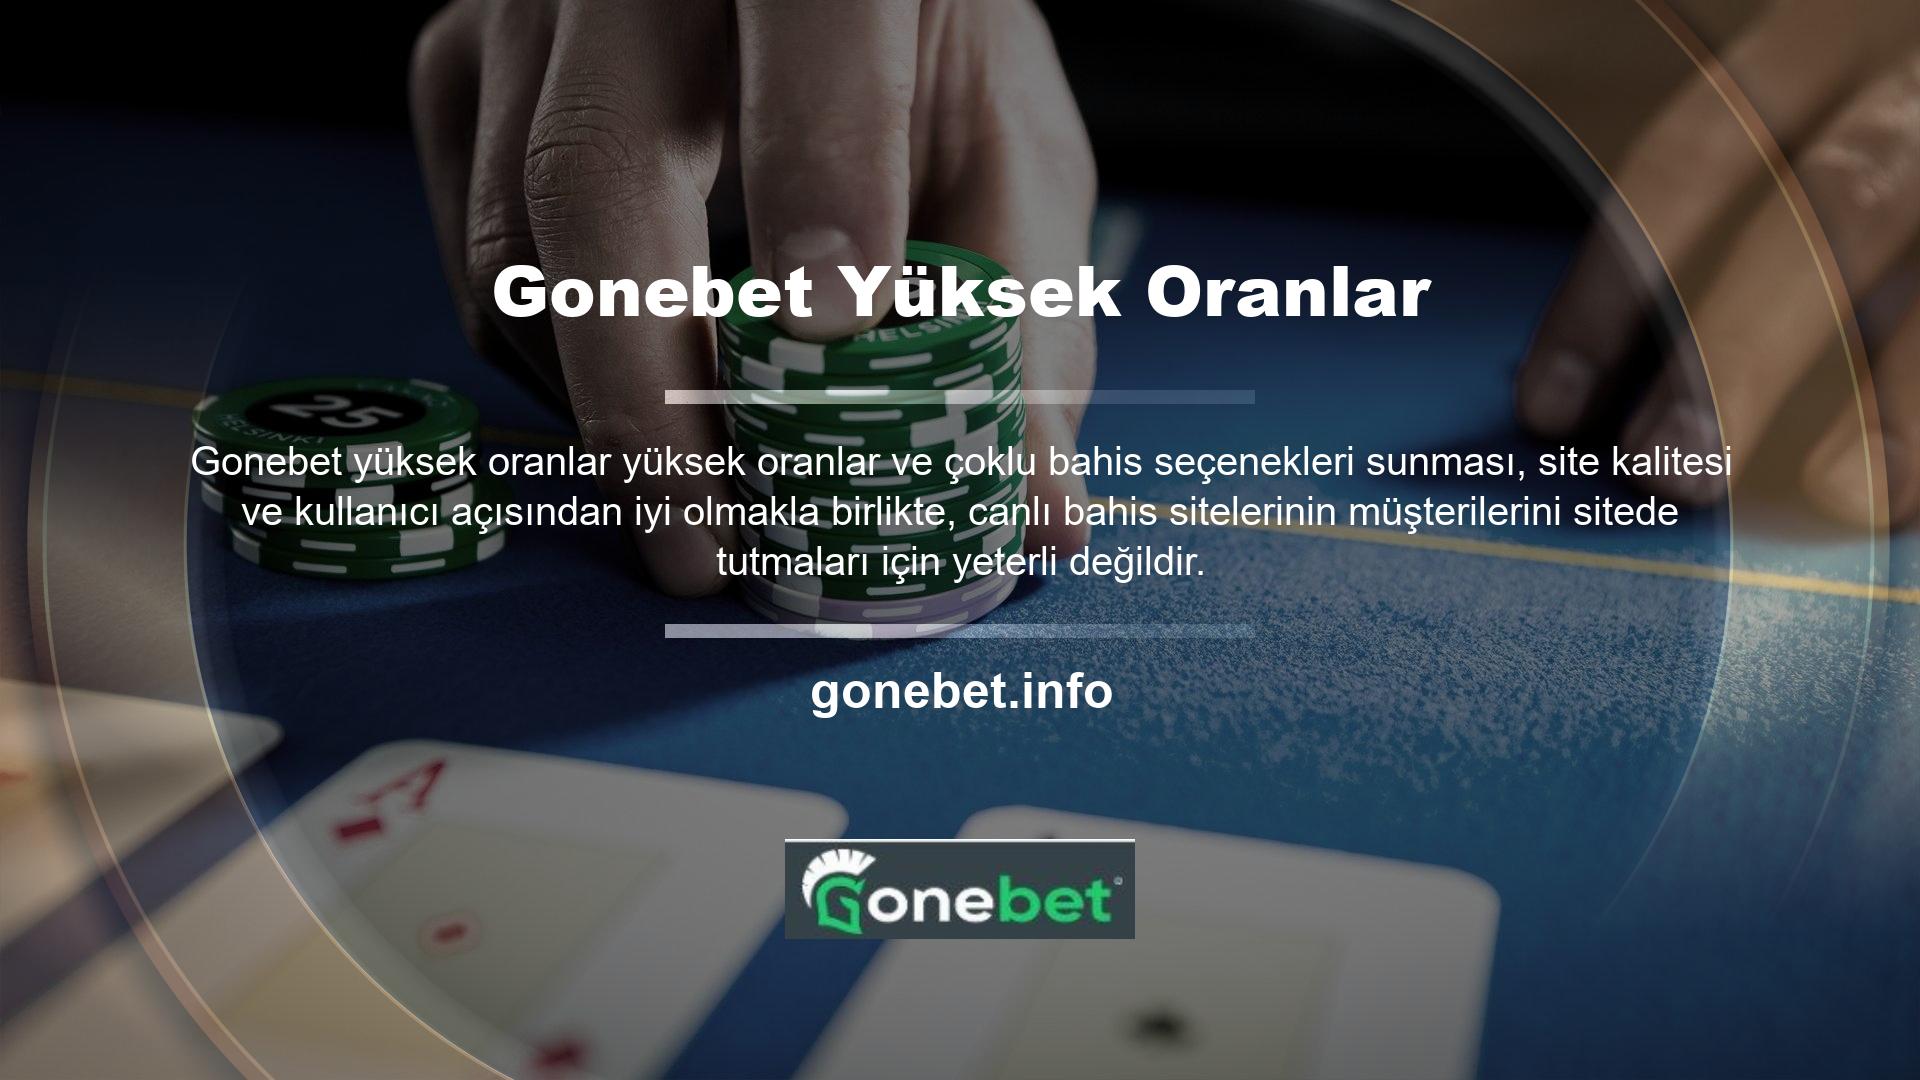 Müşterilerine kaliteli sitelerde bahis yapma ve casino oynama imkanı sunmaya kararlı olan Gonebet Bahis Sitesi, bu ekstra oranlardan ve ekstra oranlardan elde edilen kazançların her zaman müşterilerine ödenmesini sağlamayı taahhüt eder